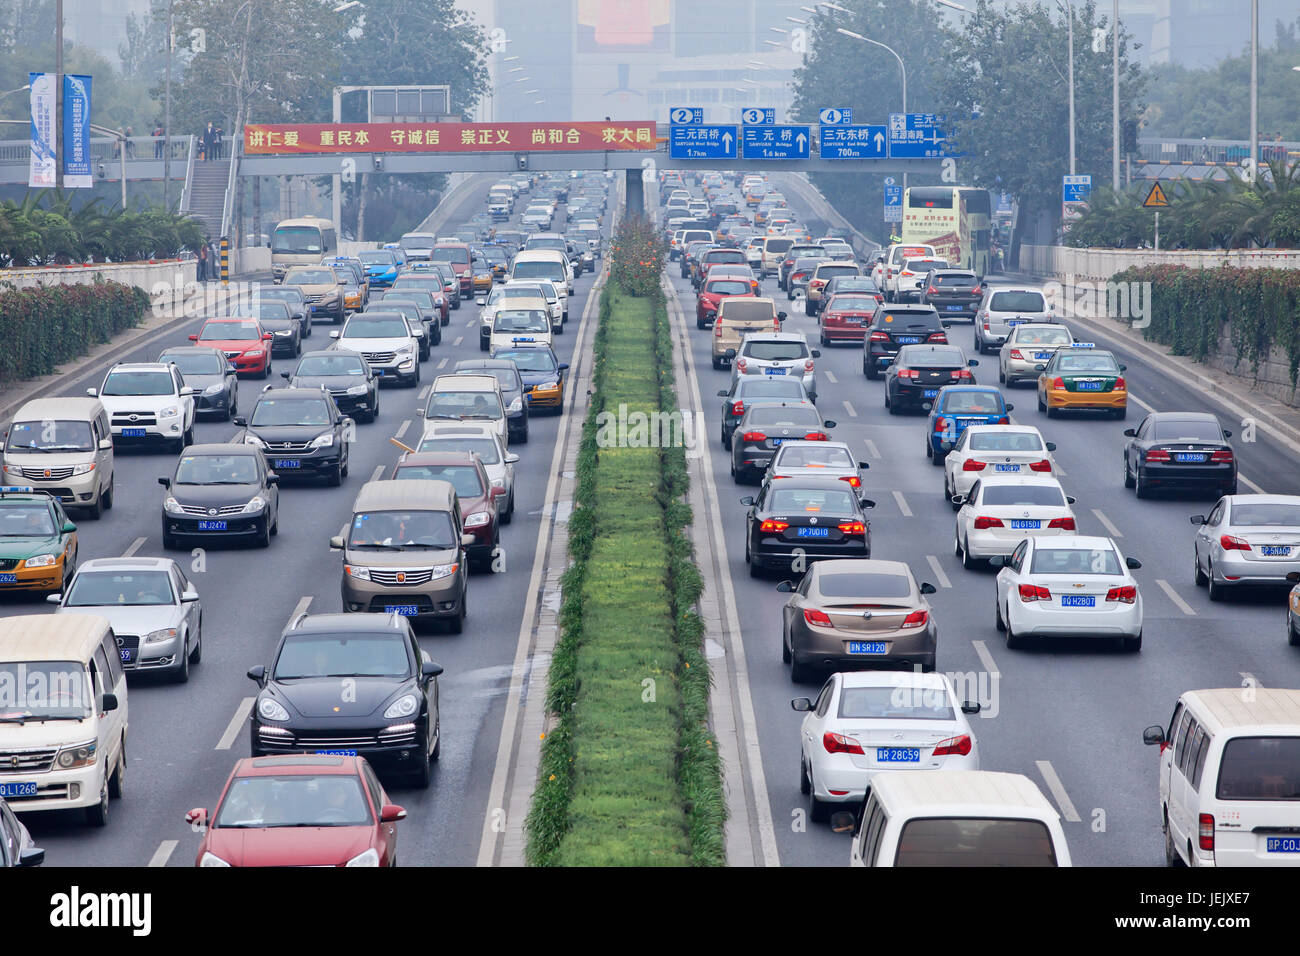 PEKING-OCT. 19, 2014. Stau in rauchbedeckter Stadt. Der Smog-Alarm in Peking wurde orange, bedeutet "gefährlich", unheimlich verursacht durch Abgasemissionen. Stockfoto